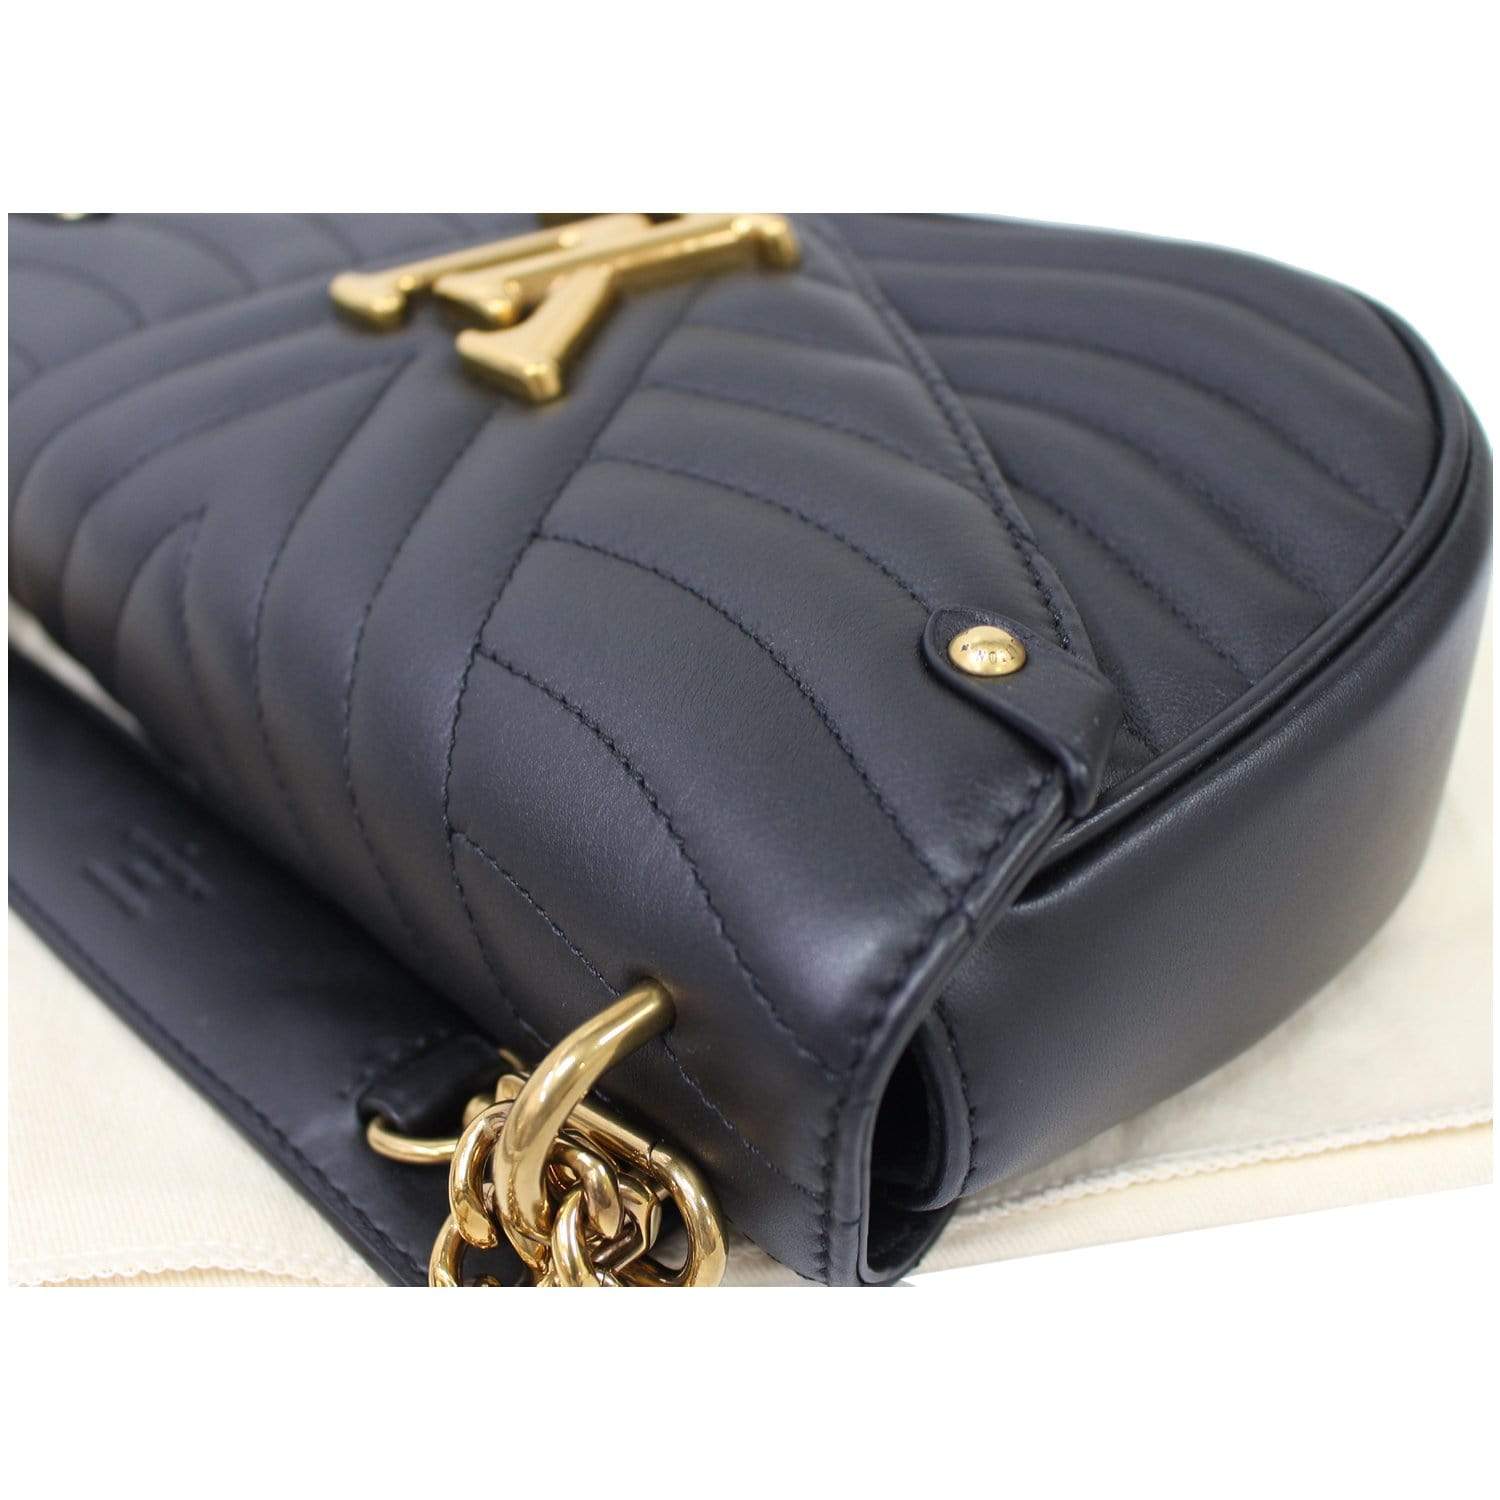 Louis Vuitton - Authenticated New Wave Handbag - Leather Black Plain for Women, Good Condition